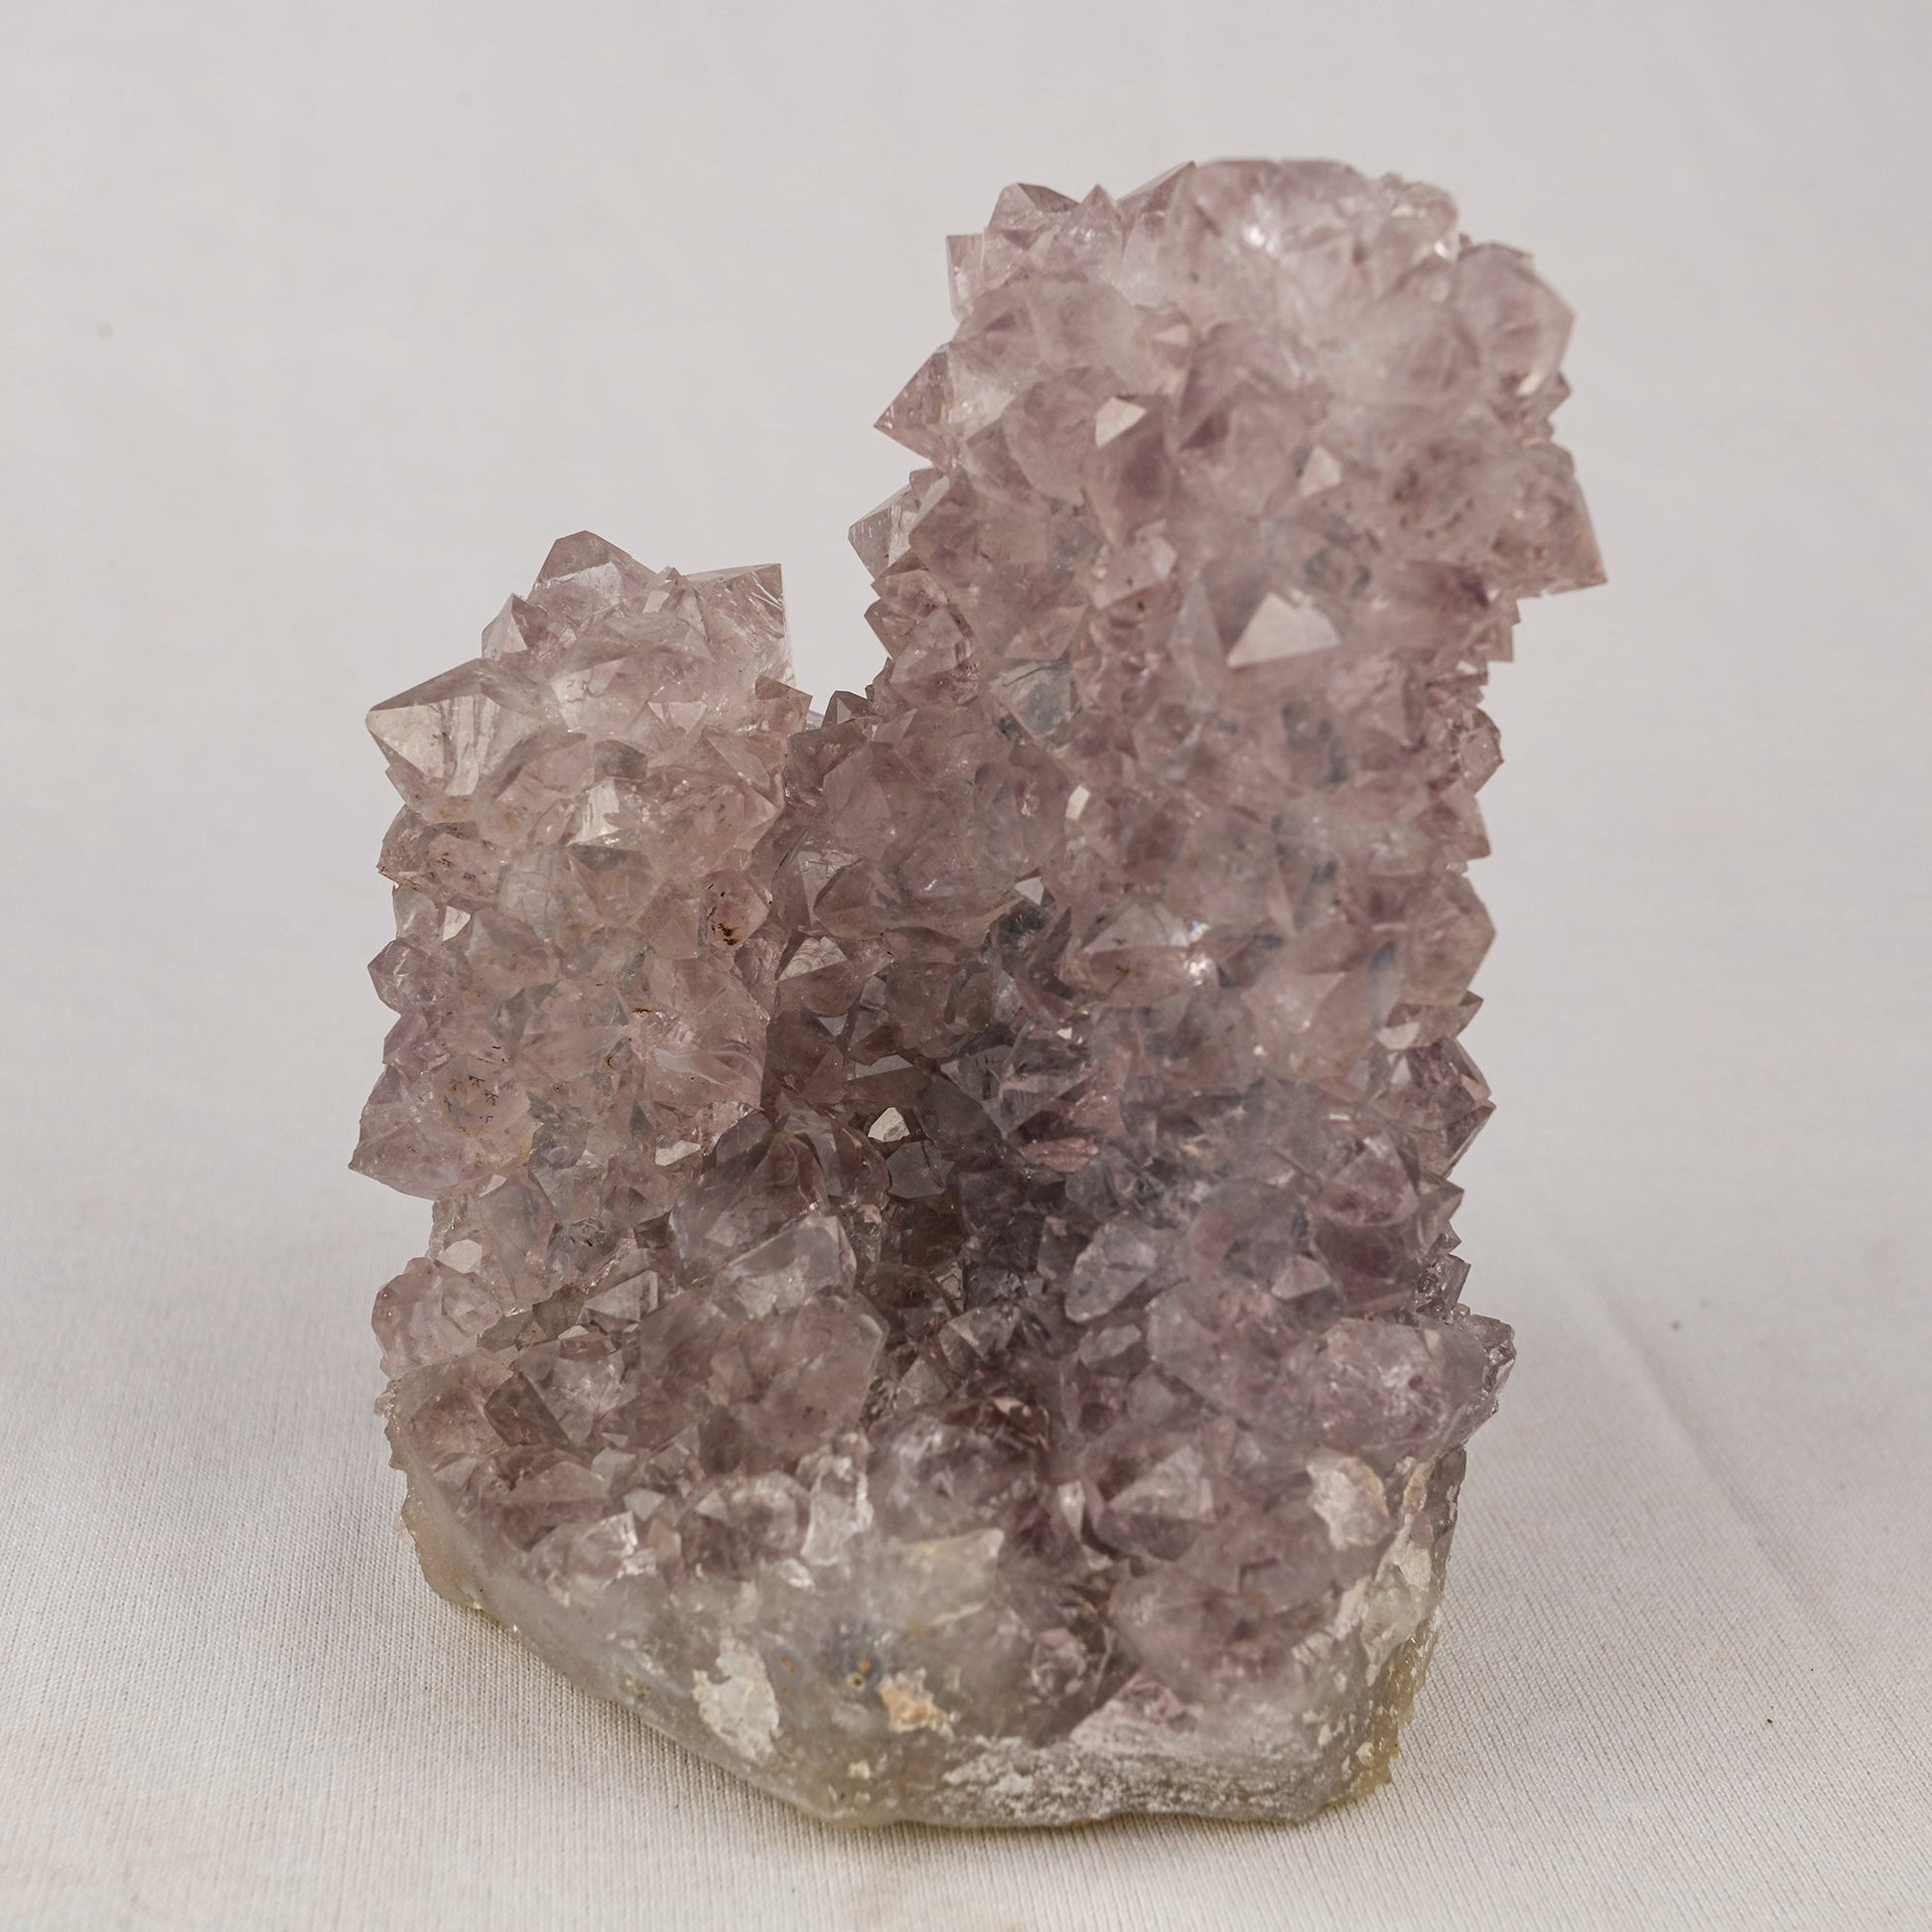 Amethyst Sprakling Crystals Natural Mineral Specimen # B 5522 Amethyst Superb Minerals 